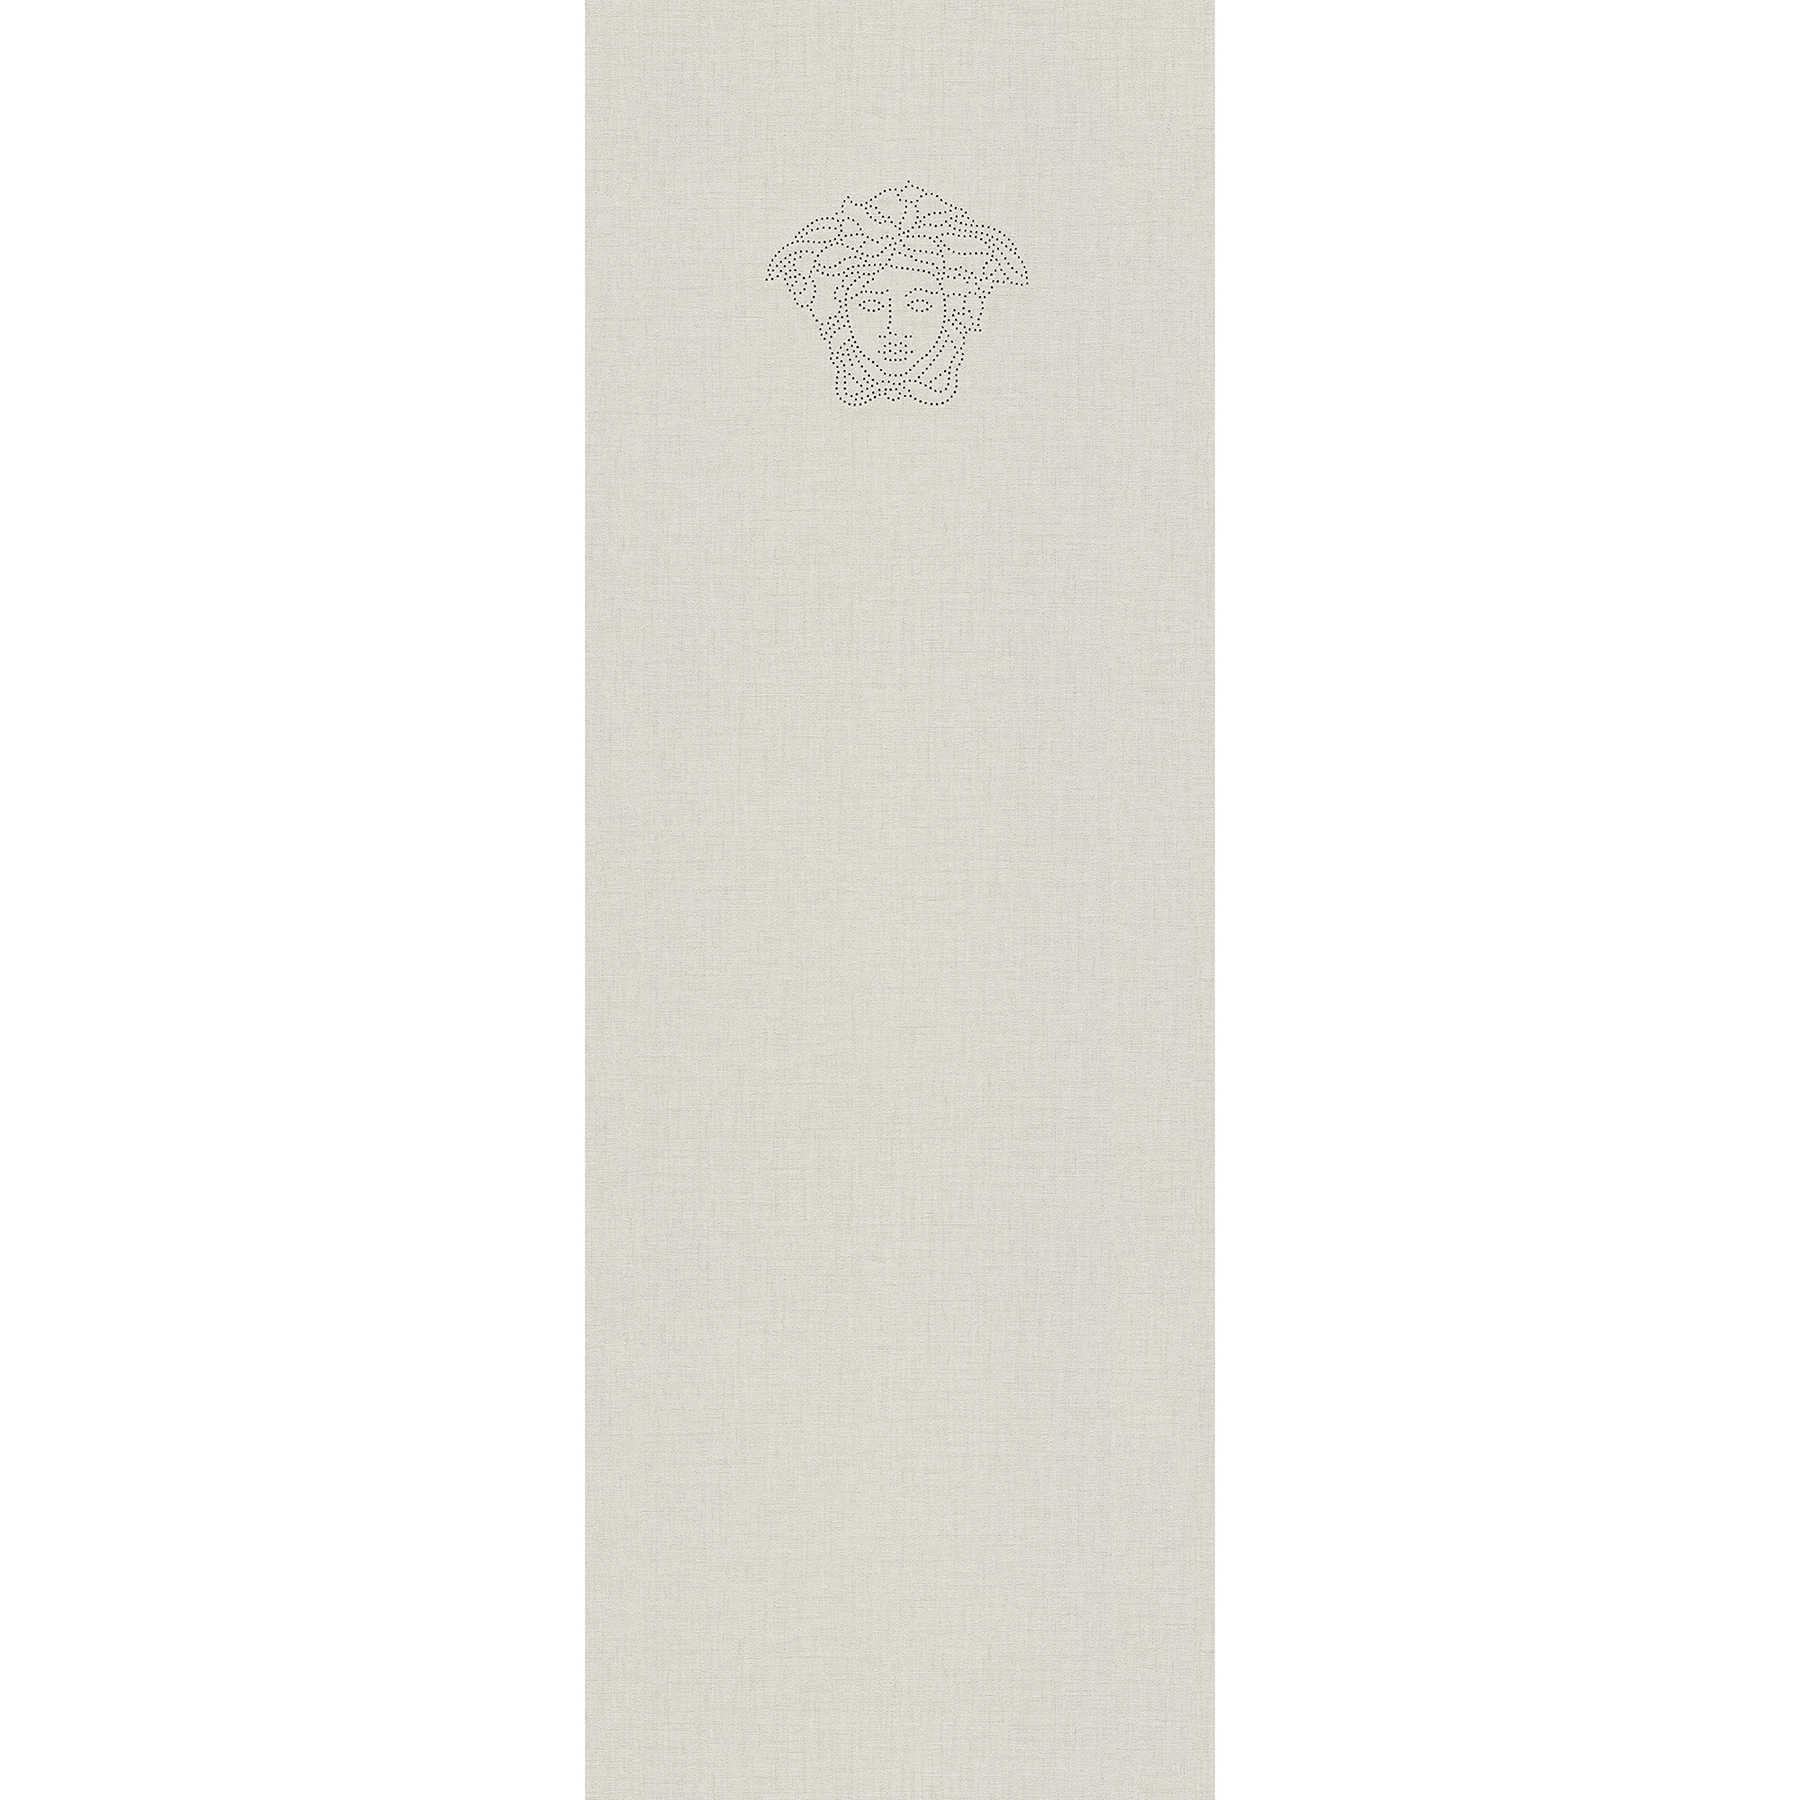 Carta da parati non tessuta liscio argento con logo perlato - metallizzato
